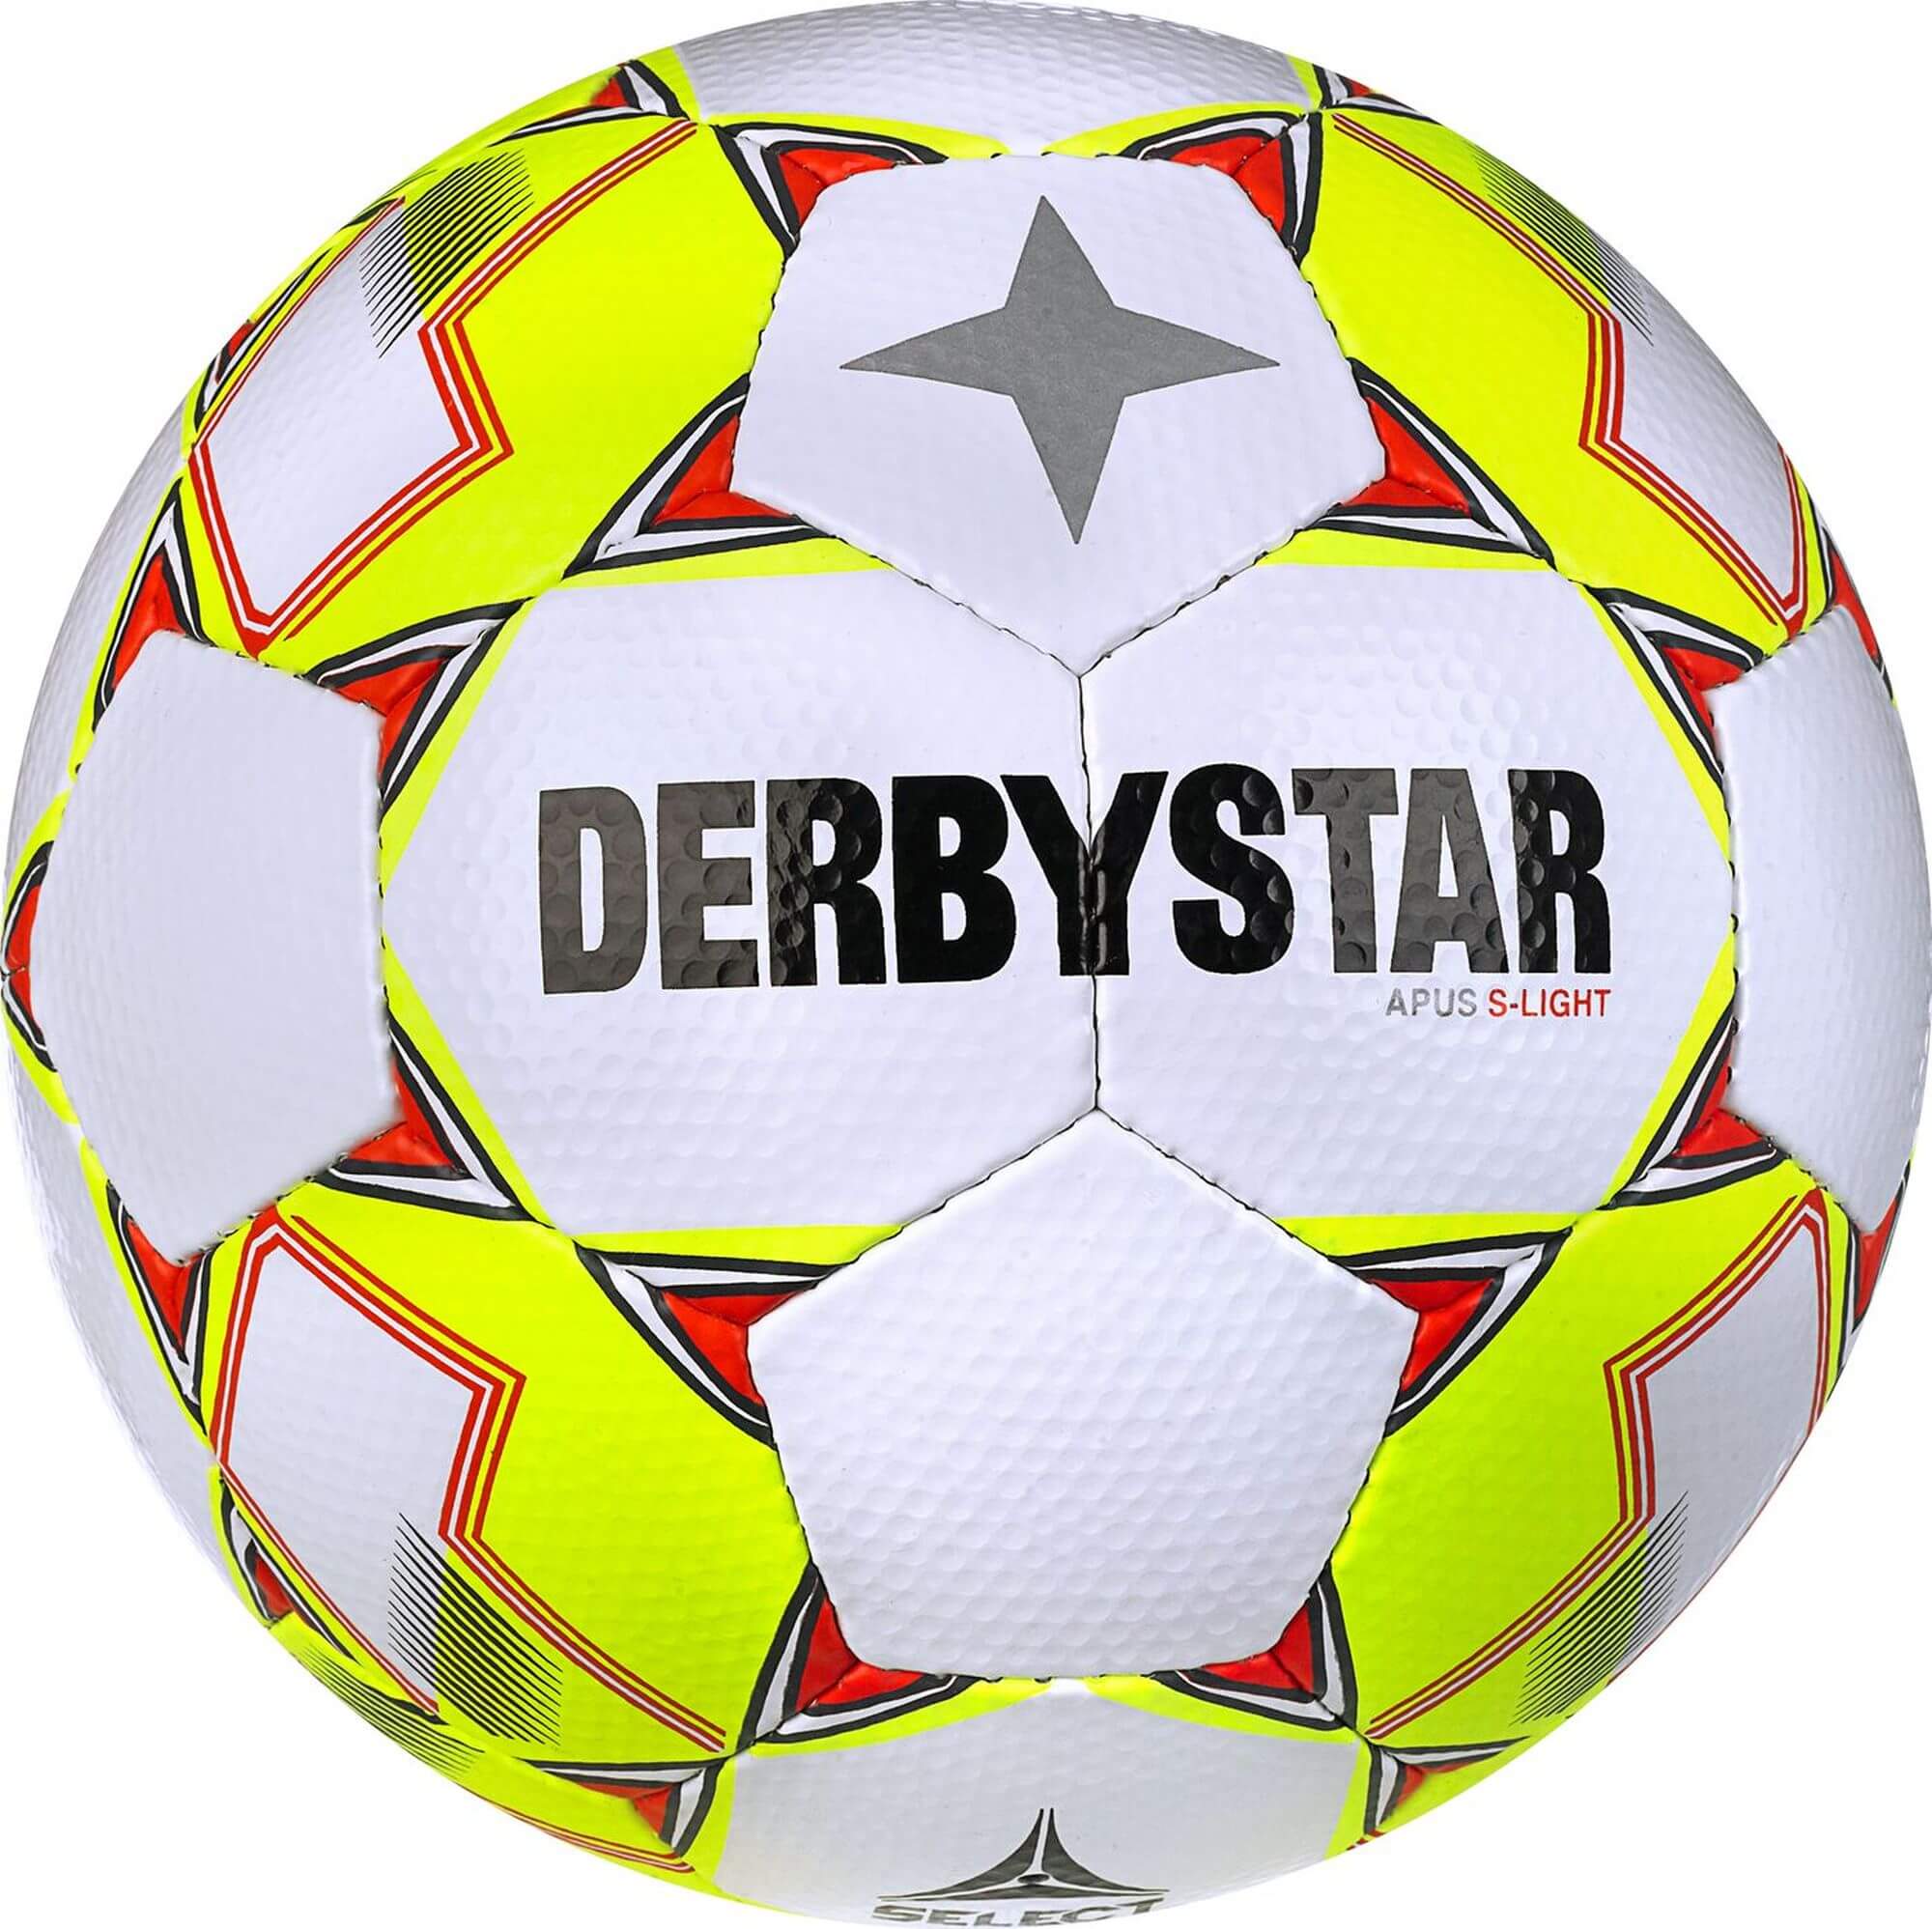 Derbystar Jugend Trainingsball APUS S-Light, Größe 4